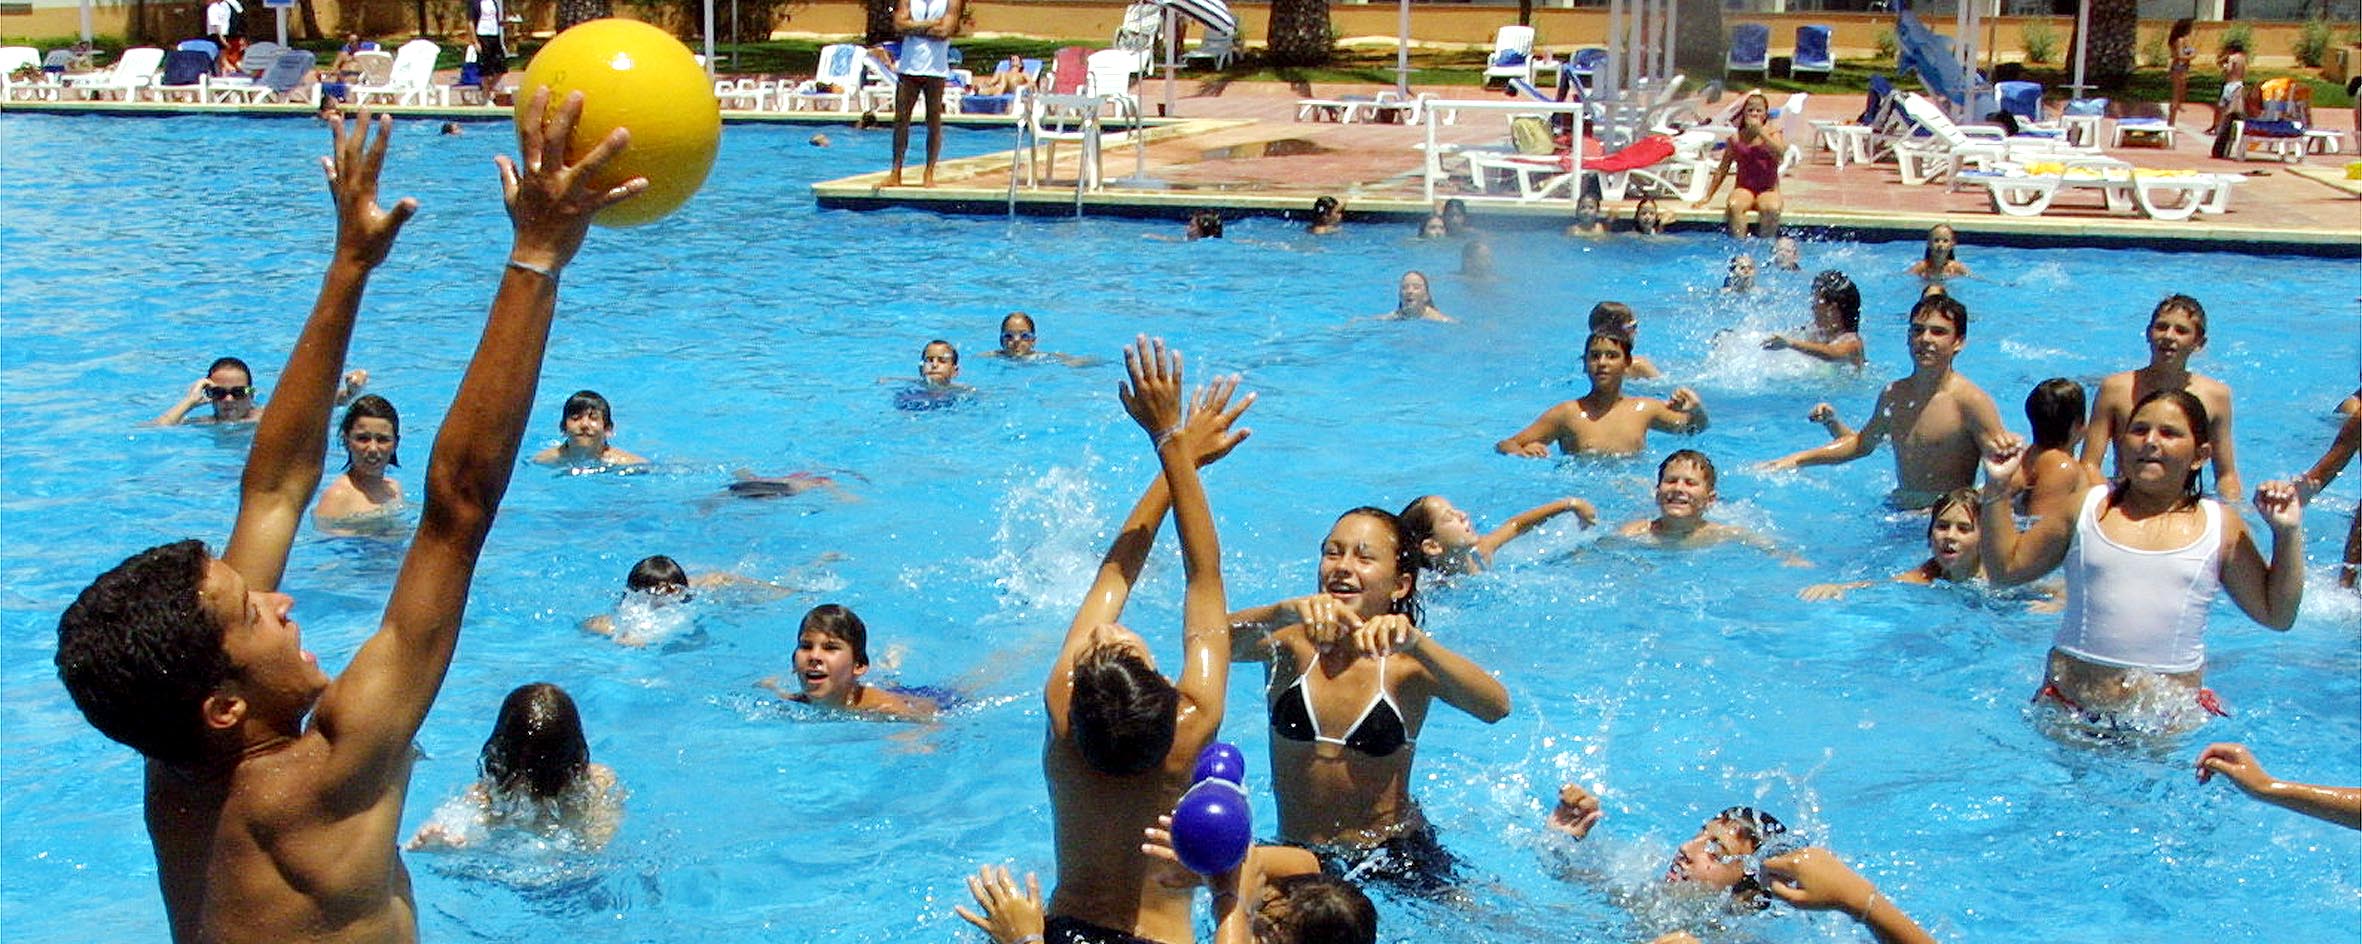 Niños jugando en la piscina